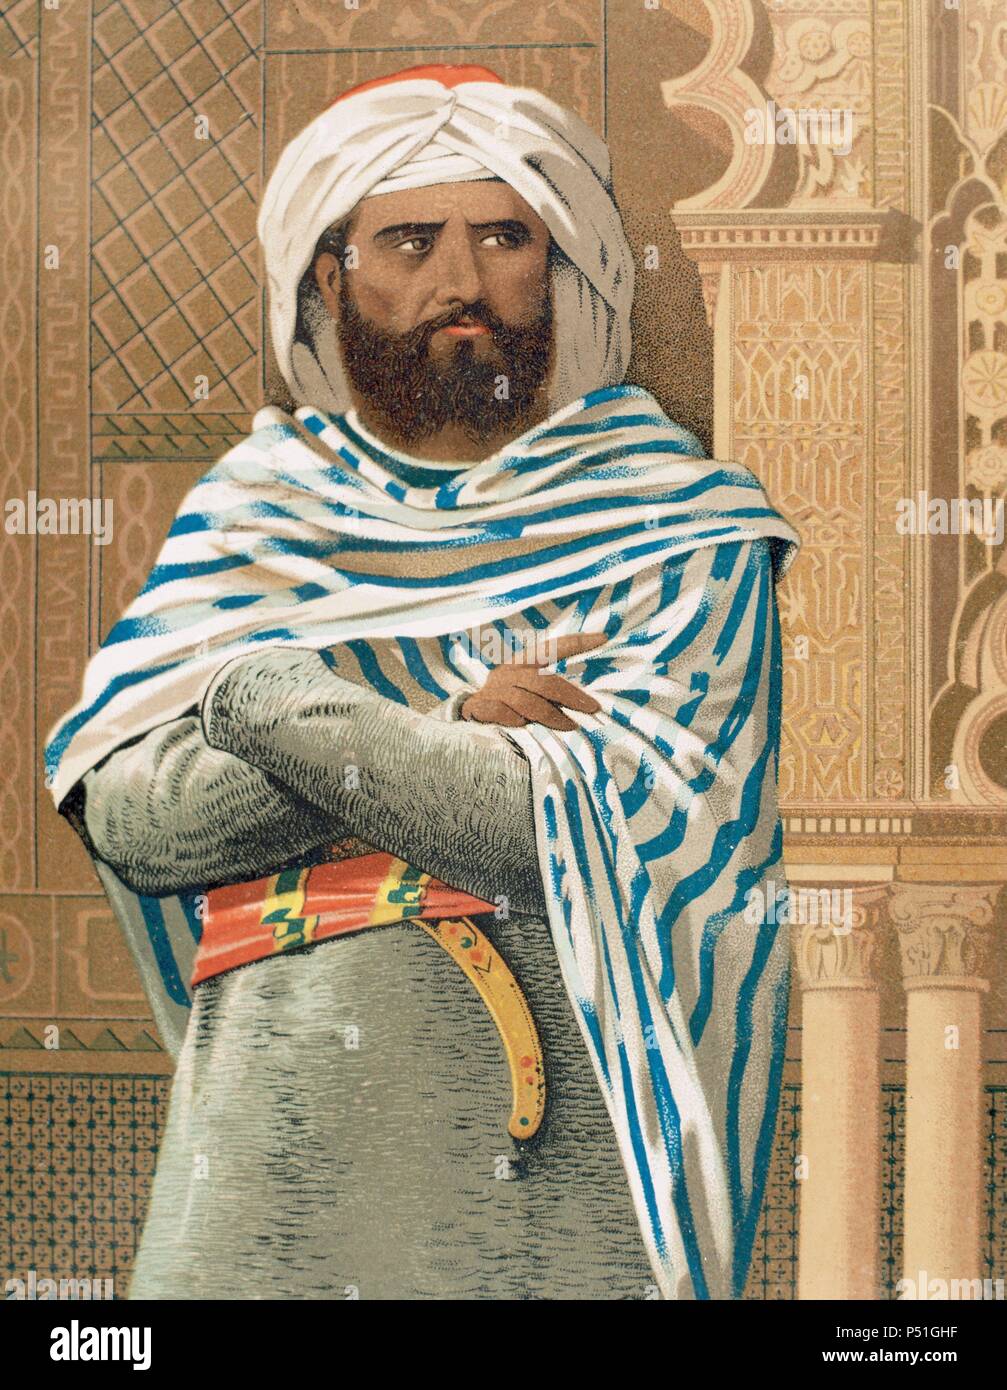 3 халиф. Халиф Абд Аль-Малик. Абд Аль Рахман 1. Хишам (i) ибн Абд Аль-Малик. Абд ар-Рахман III.